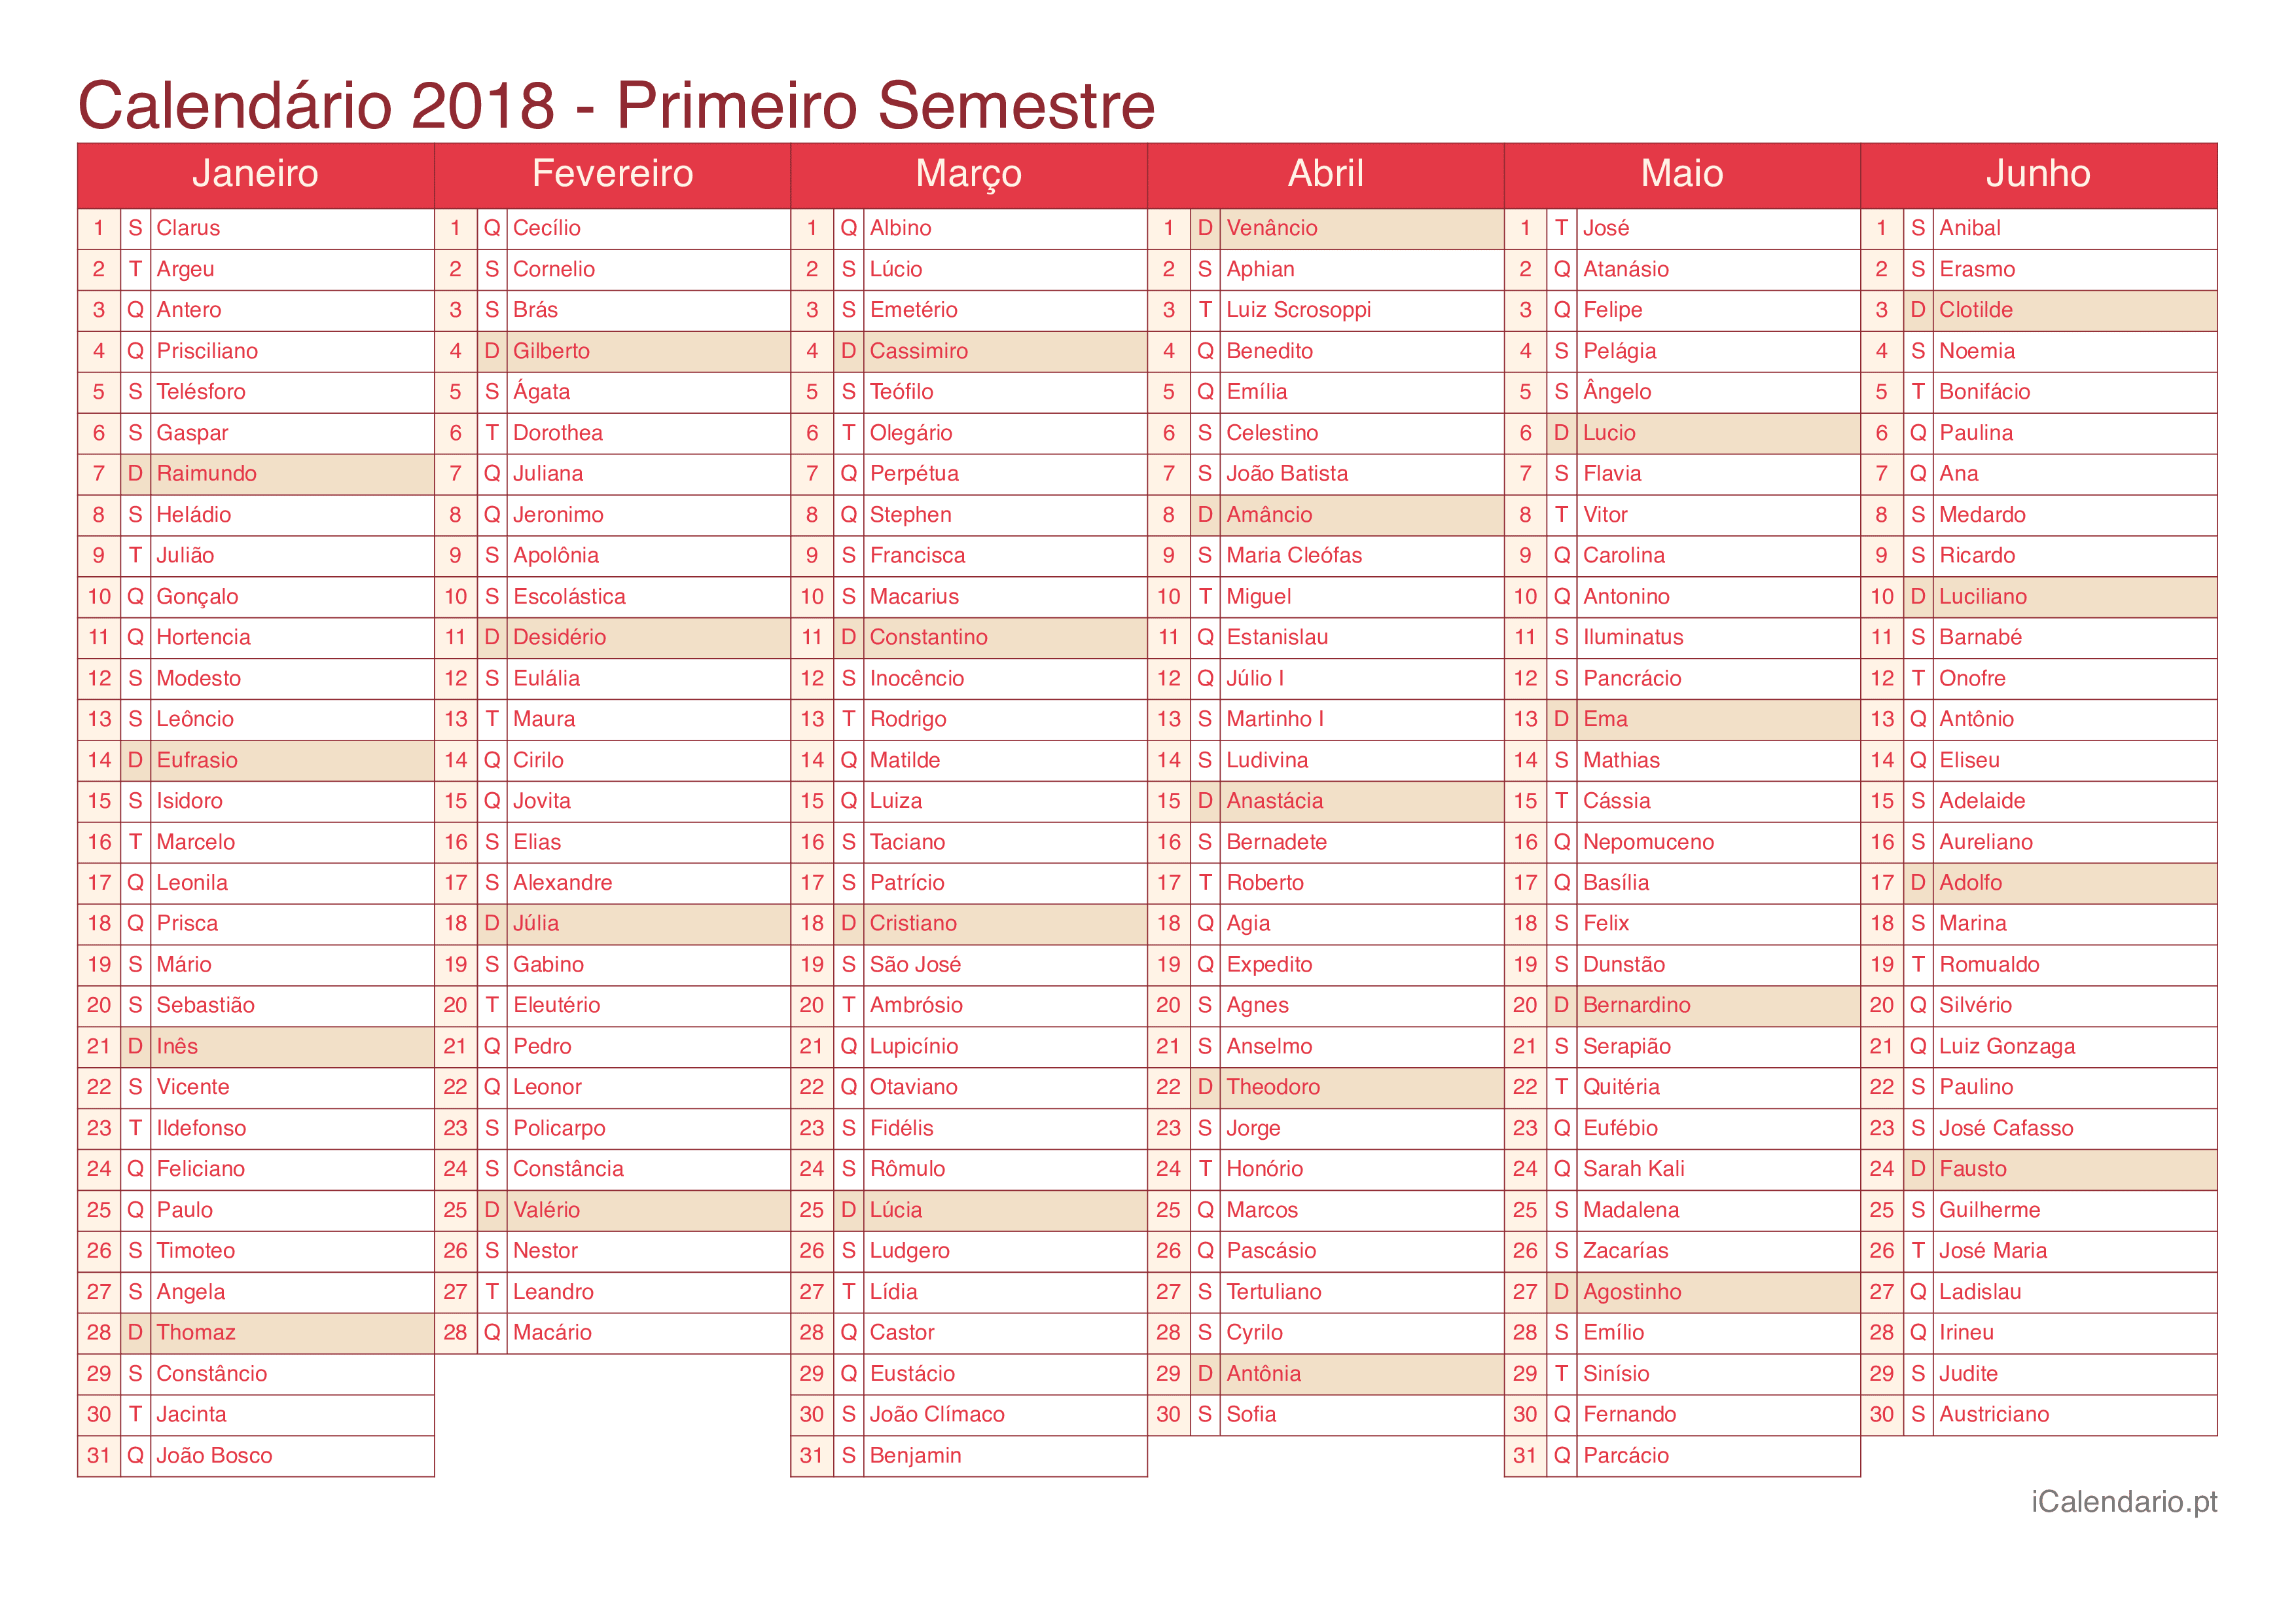 Calendário por semestre 2018 com festa do dia - Cherry